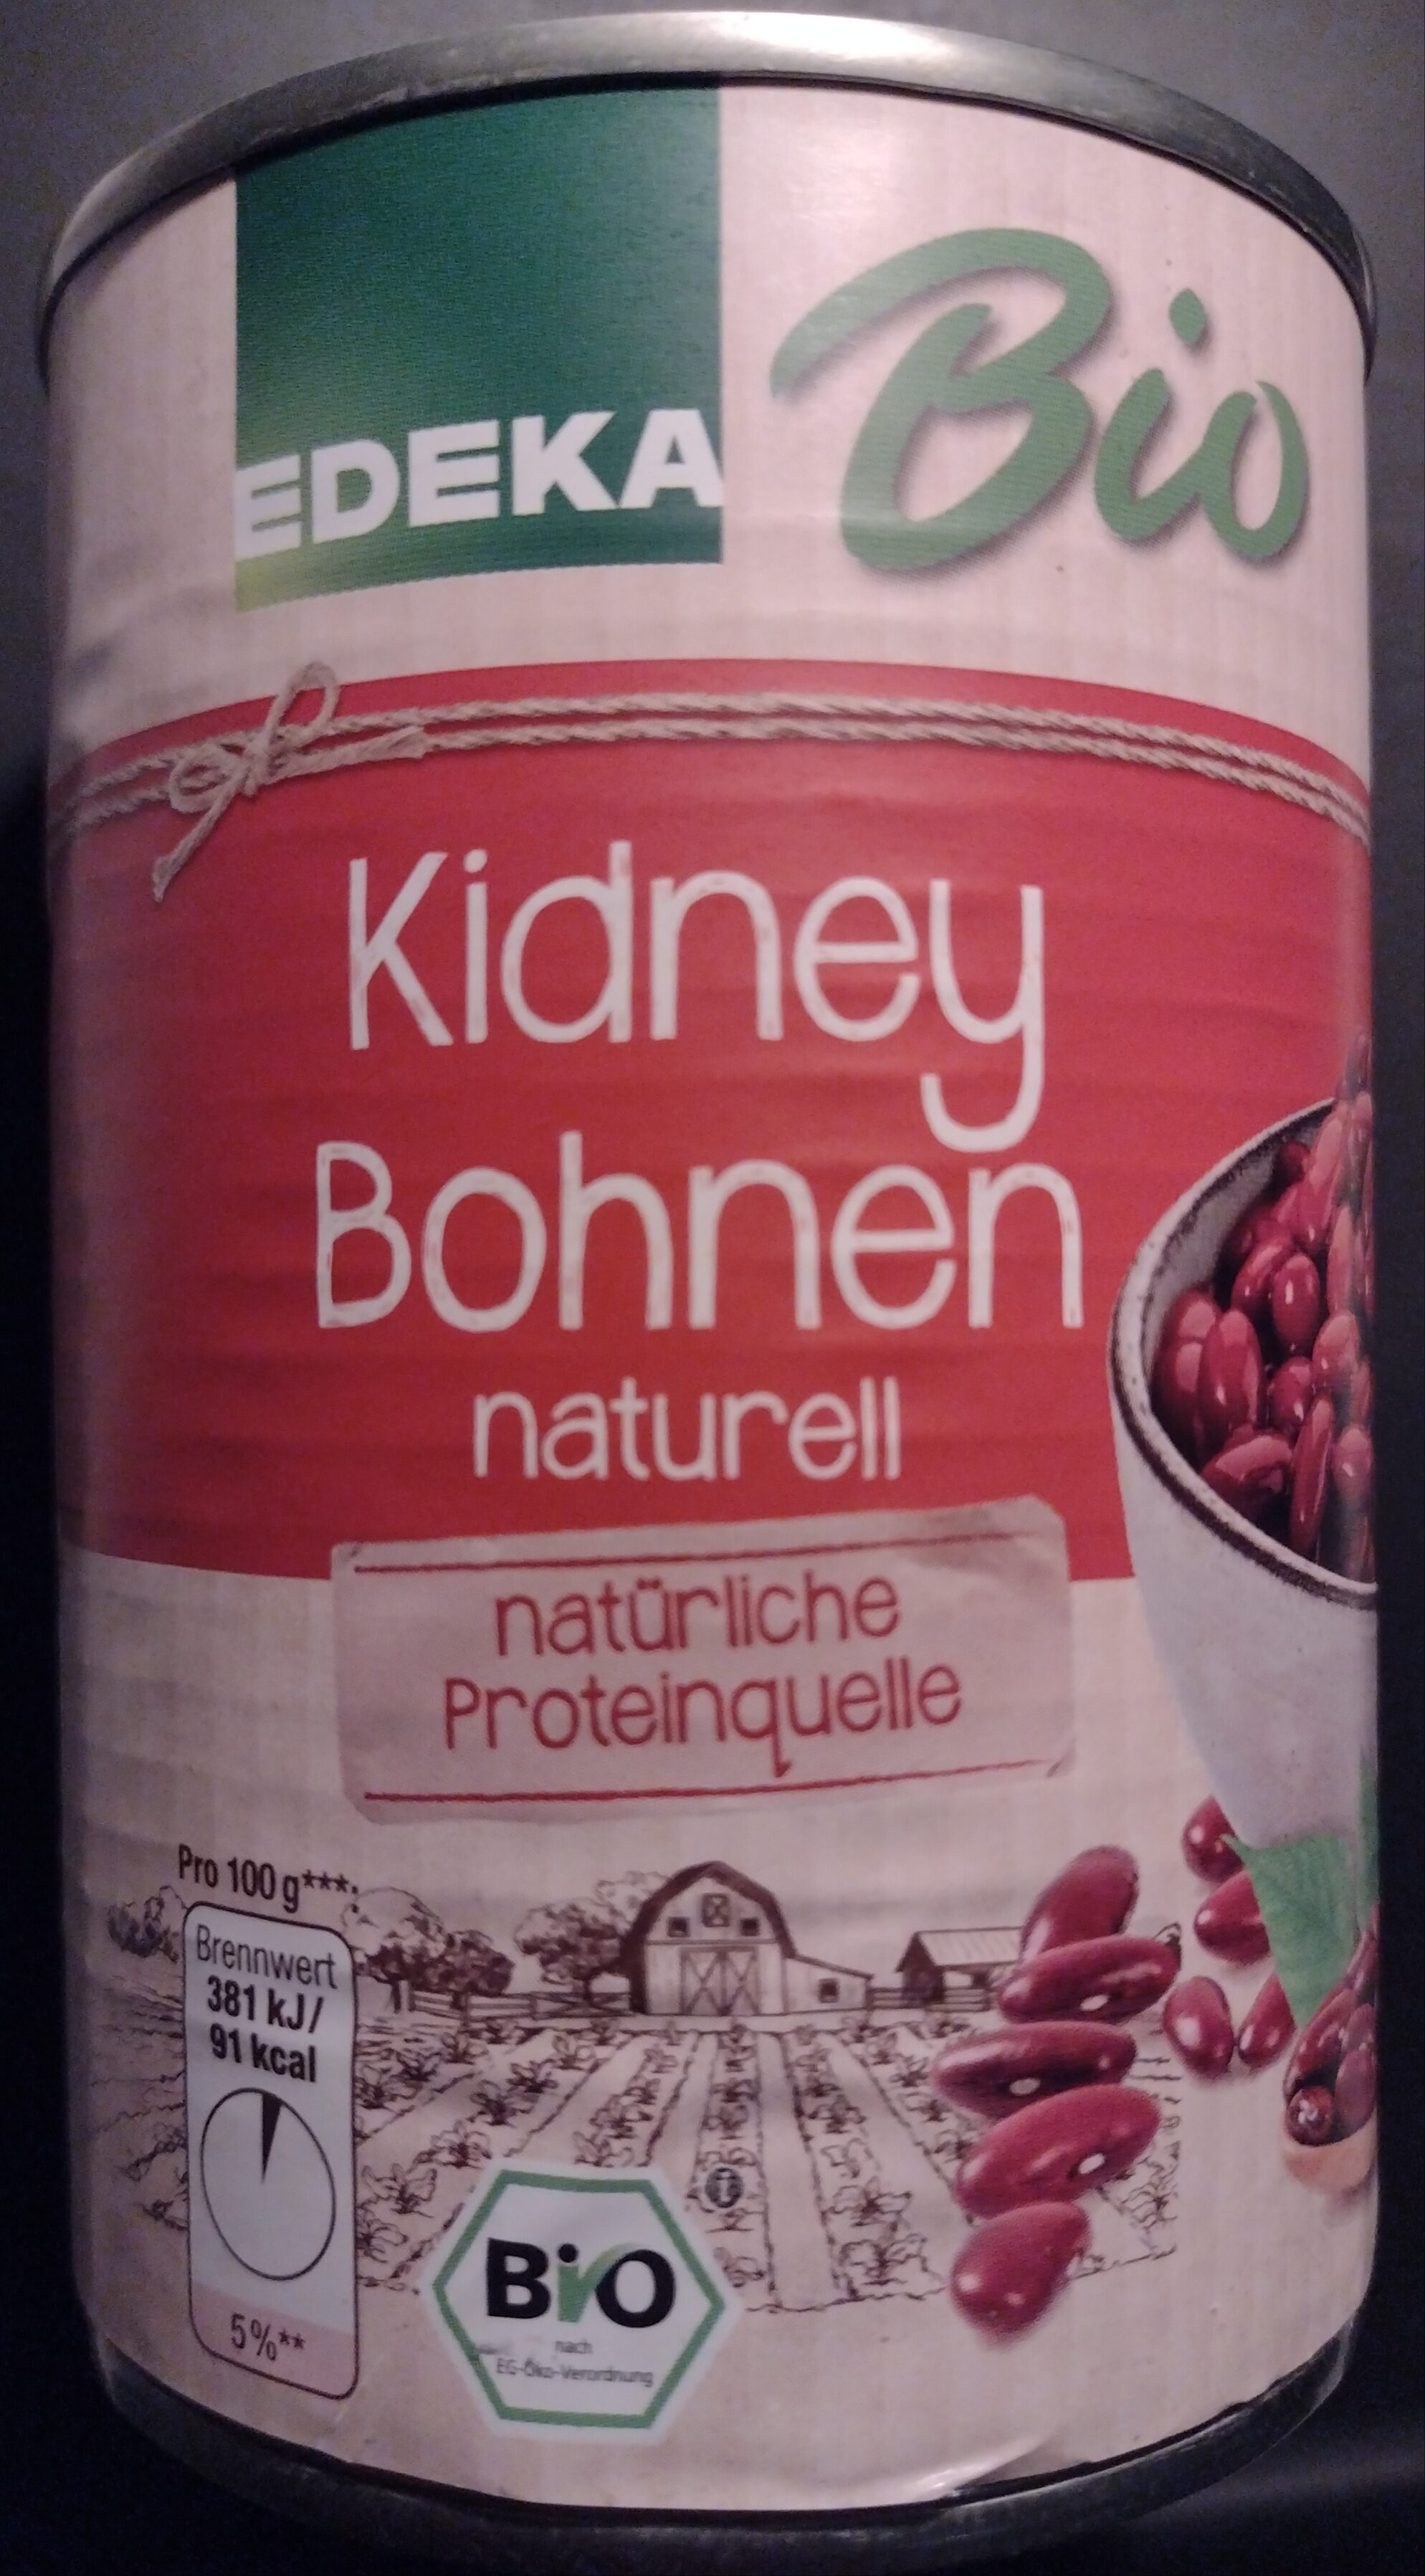 Kidney Bohnen naturell - Bio - Produkt